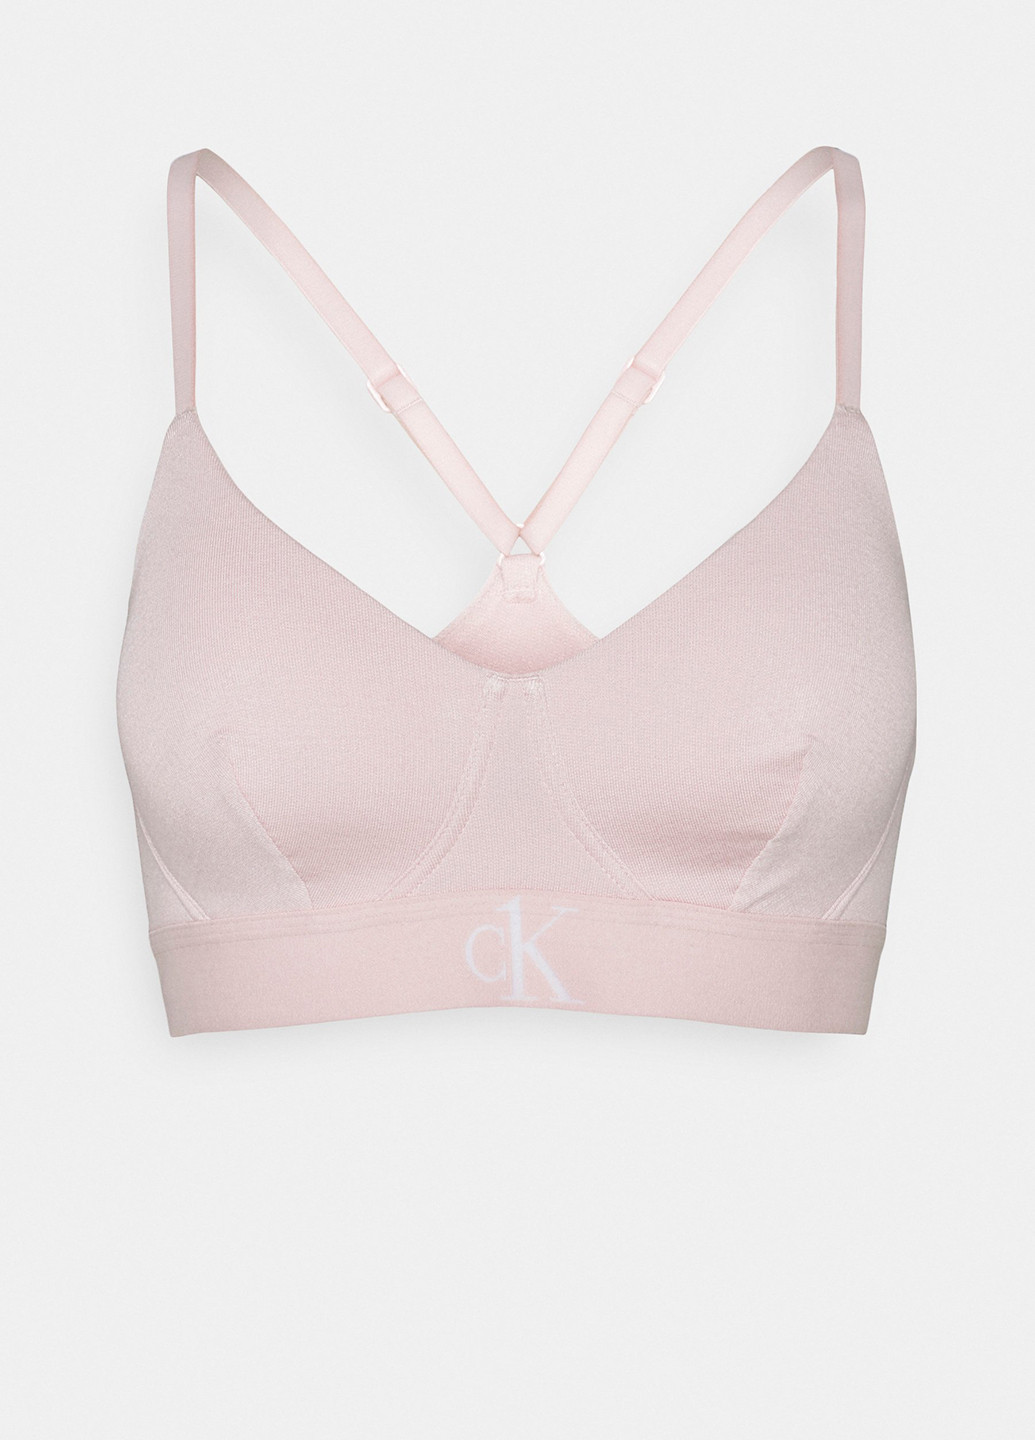 Светло-розовый топ бюстгальтер Calvin Klein без косточек модал